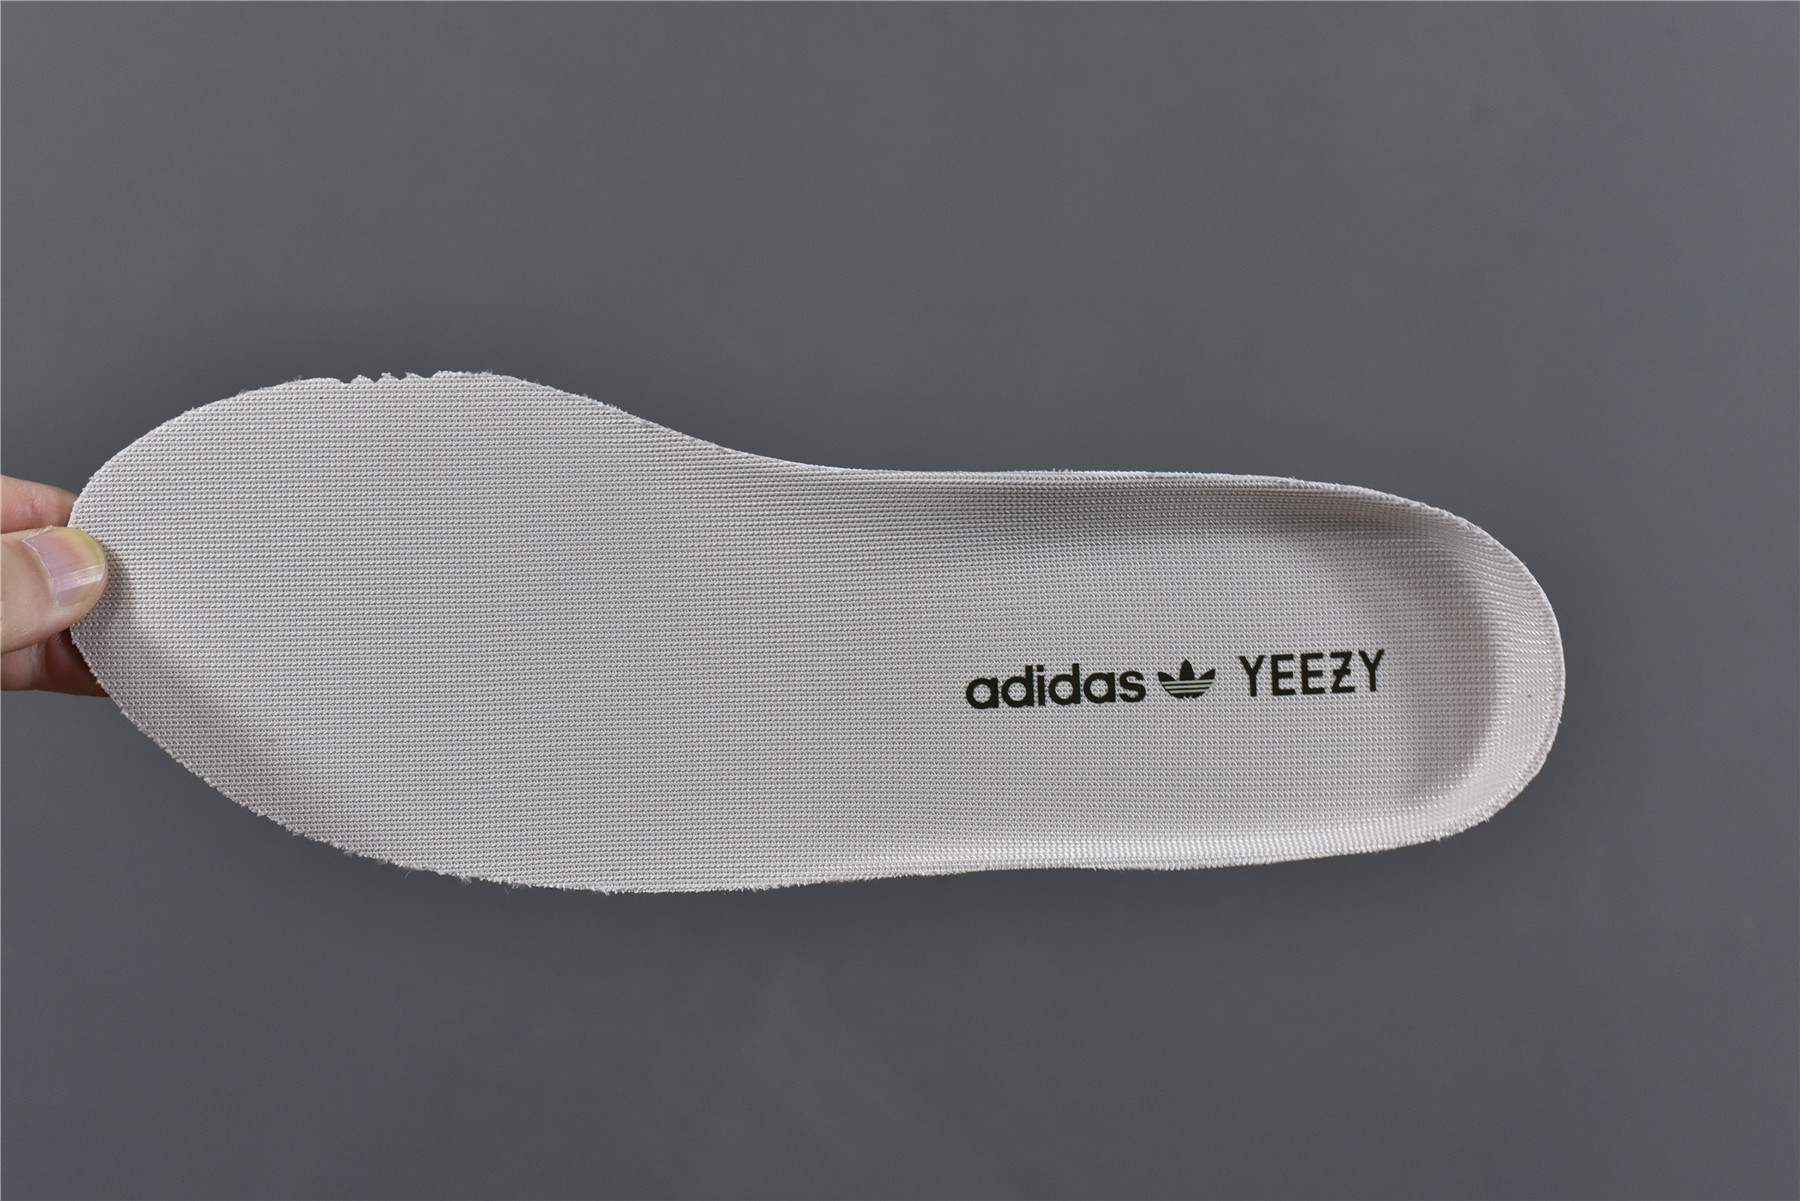 Adidas Yeezy Boost 350 V2 Zyon Fz1267_kickbulk 33 - www.kickbulk.co